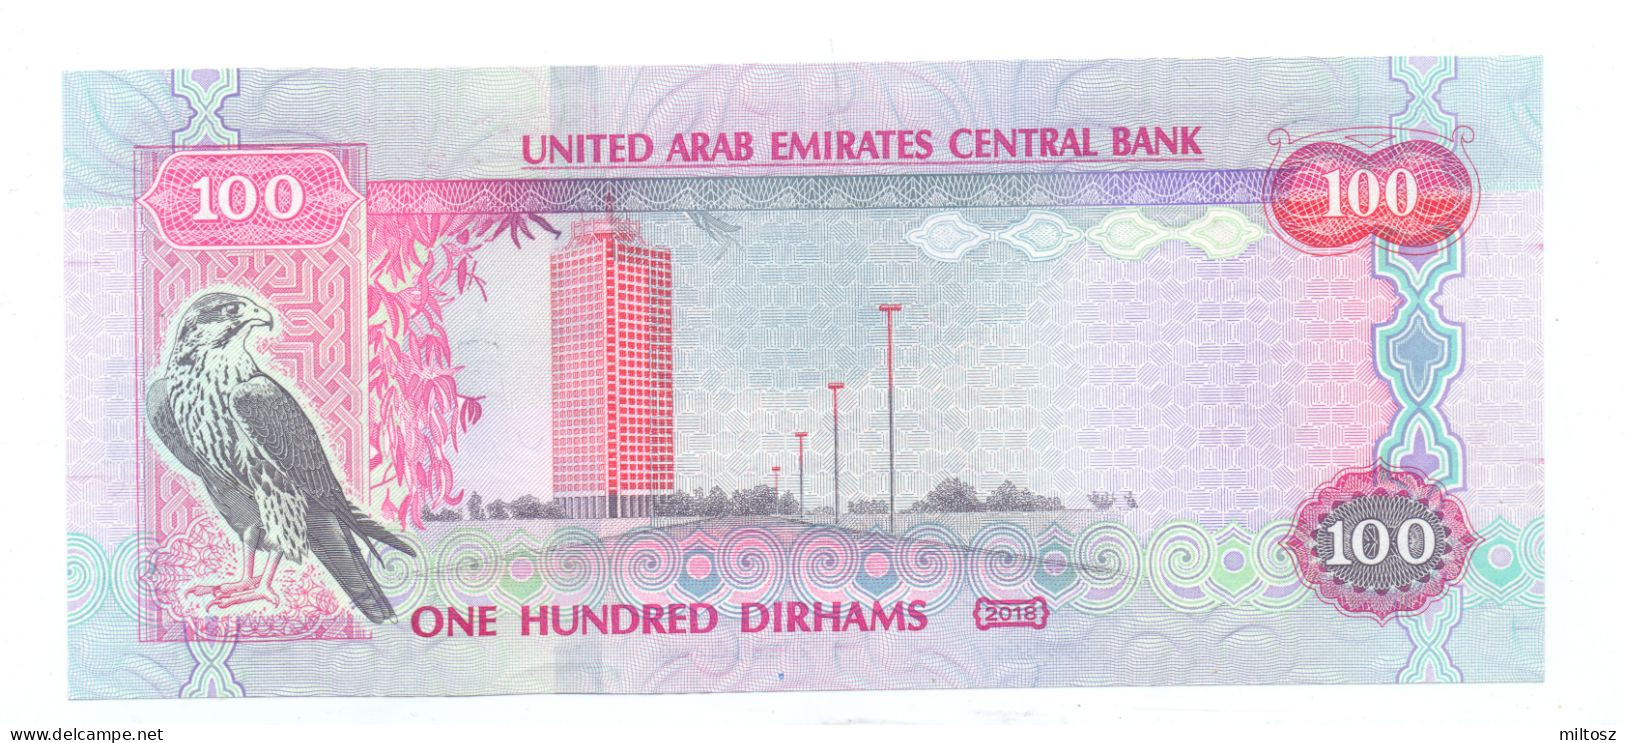 United Arab Emirates 100 Dirhams 2008/1429 - Ver. Arab. Emirate